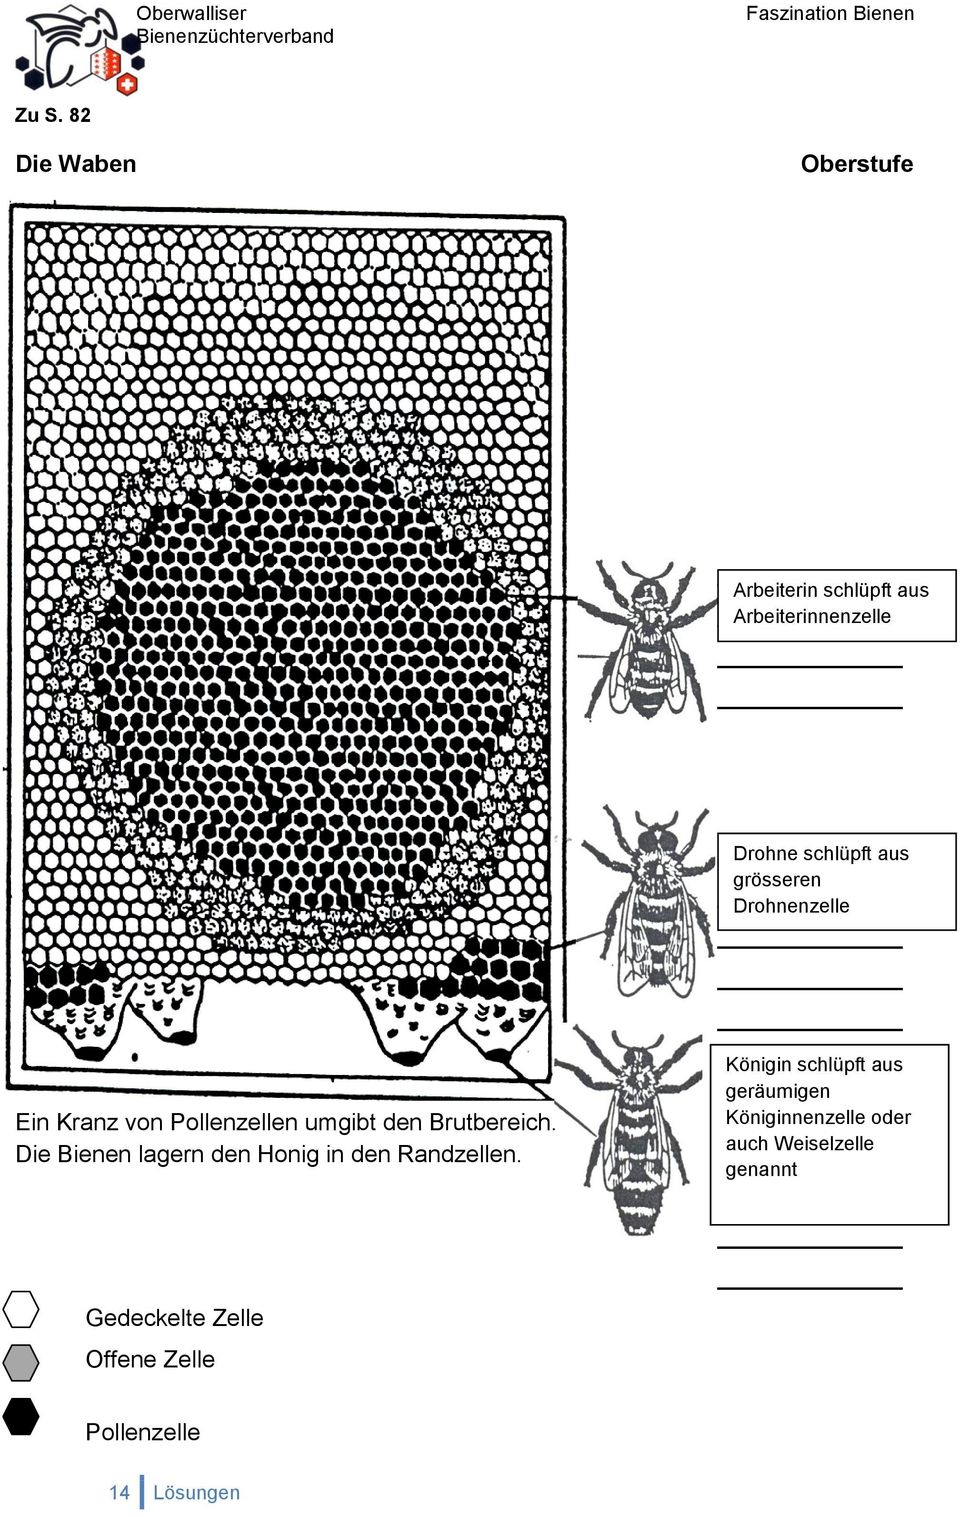 Die Bienen lagern den Honig in den Randzellen.